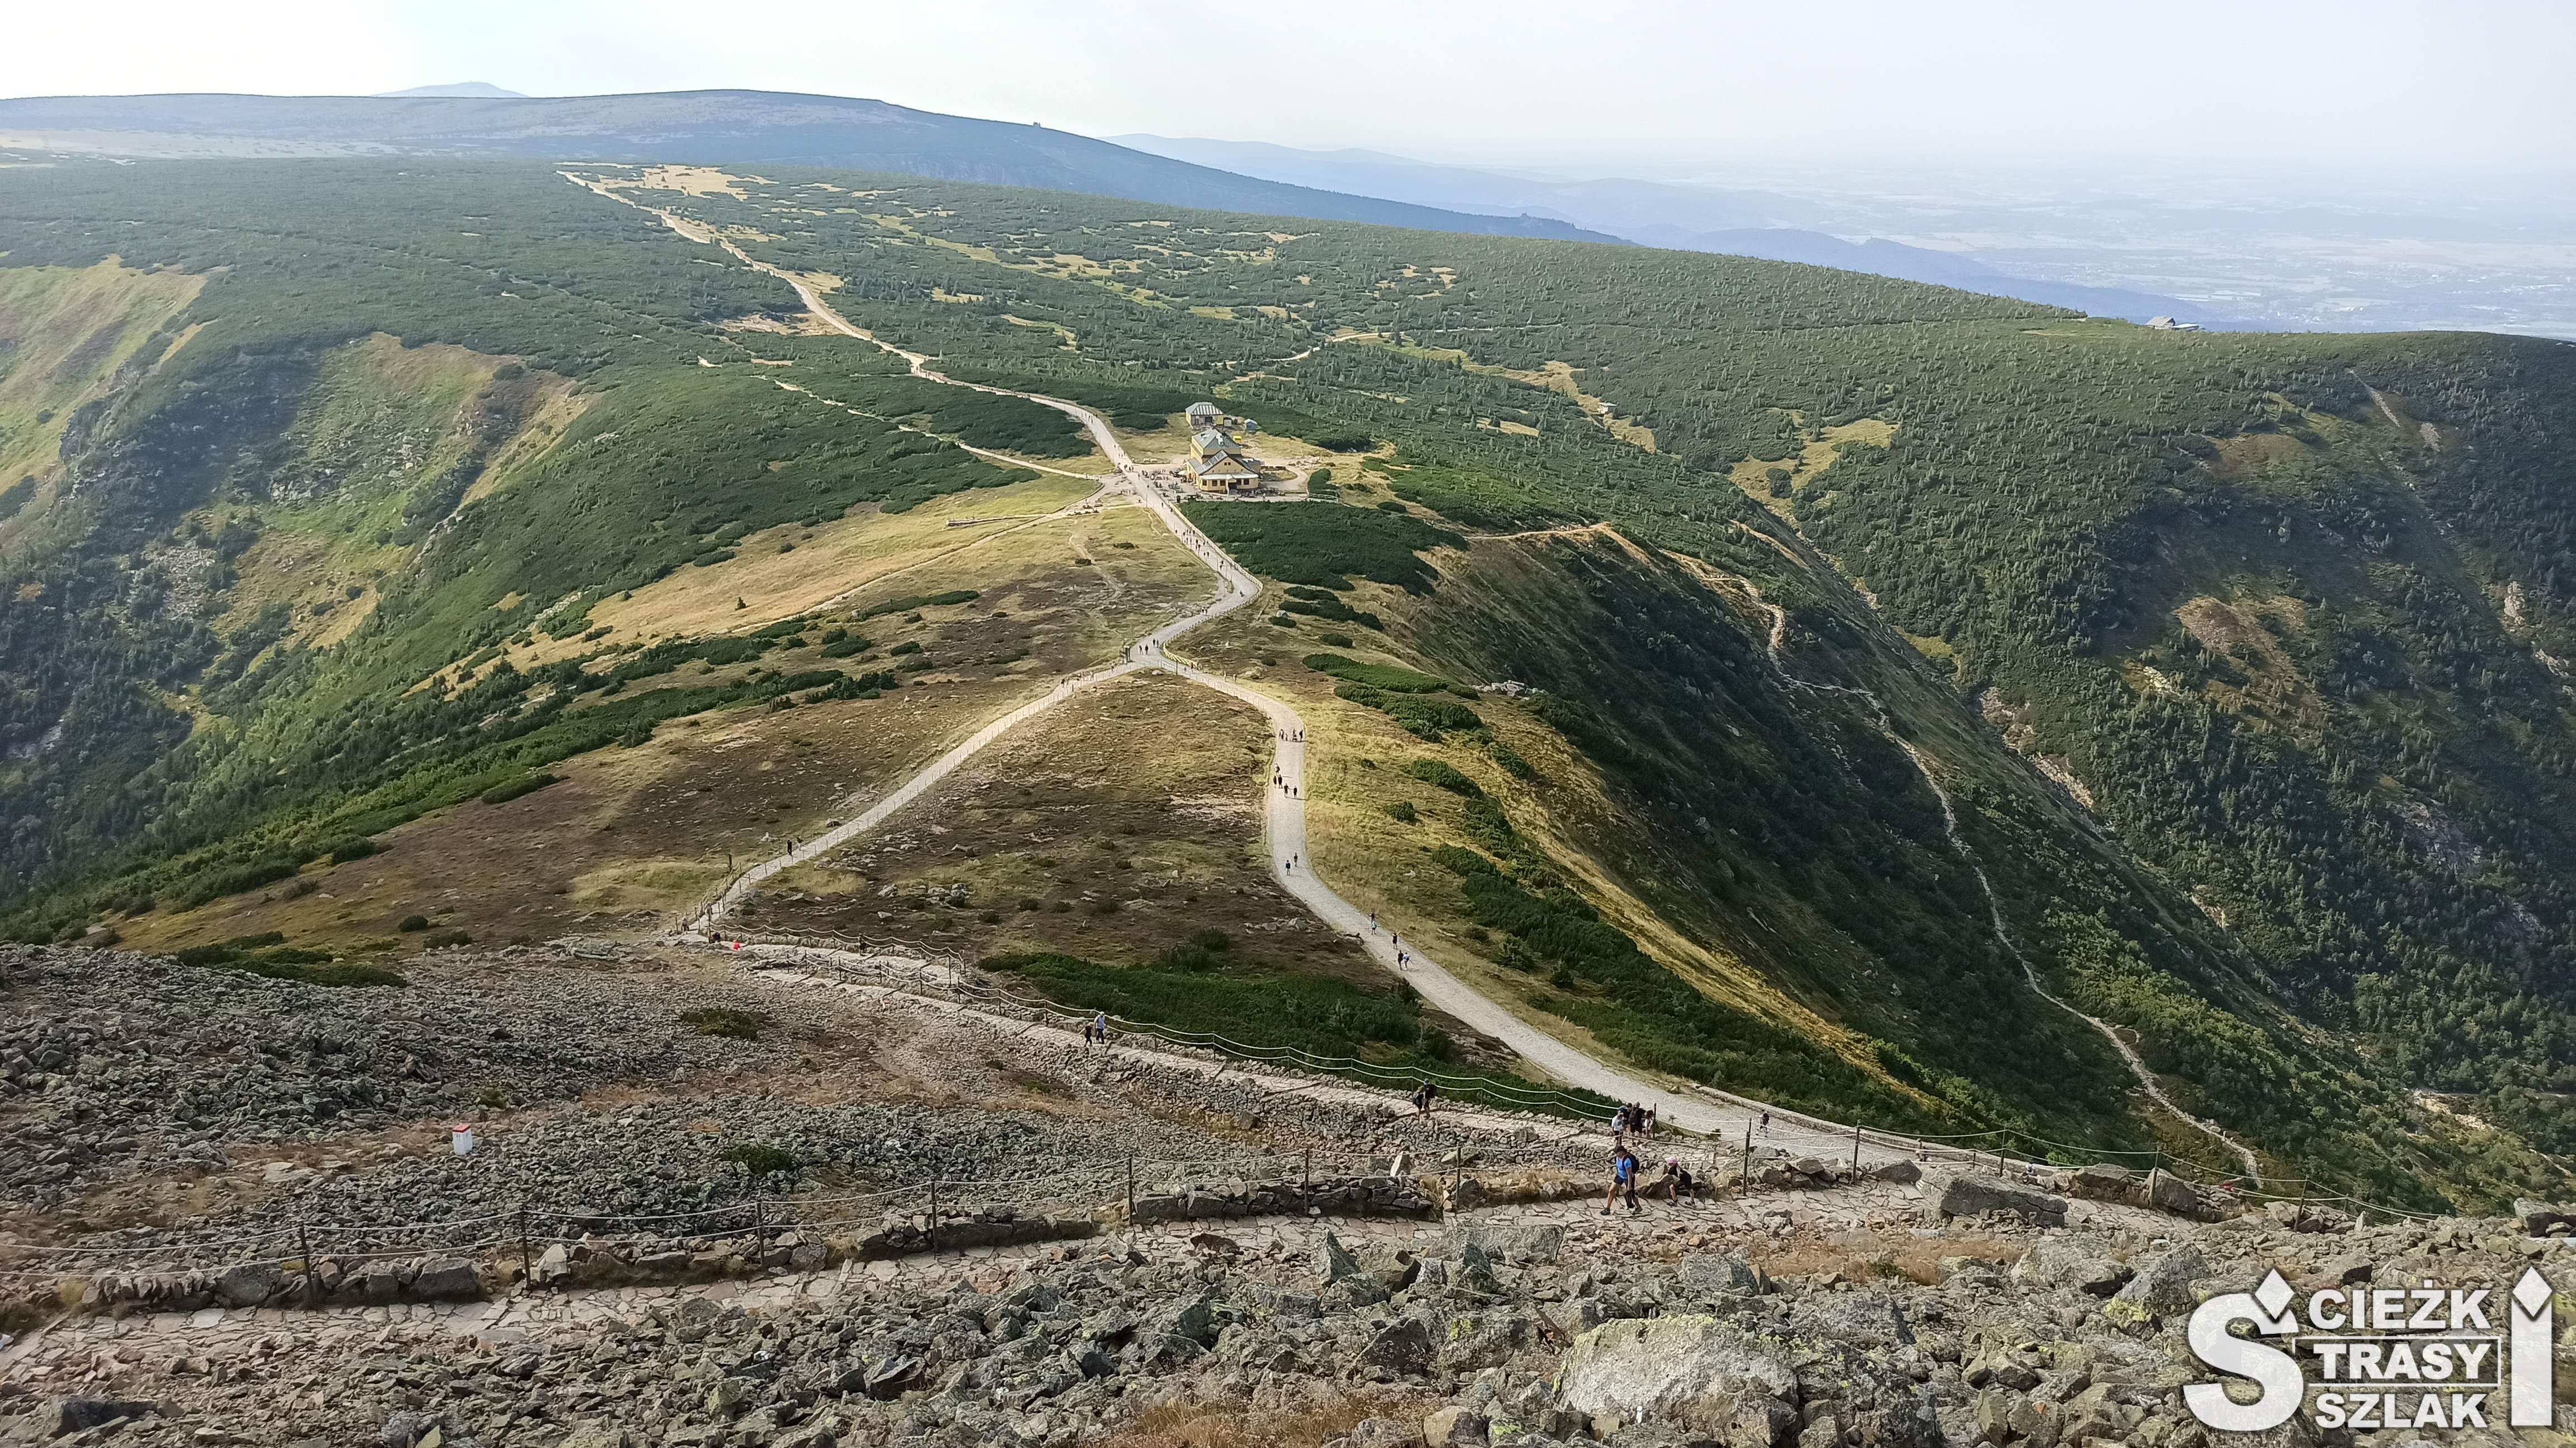 Wydeptane ścieżki piesze tworzące wiele szlaków górskich biegnące przez góry Karkonosze